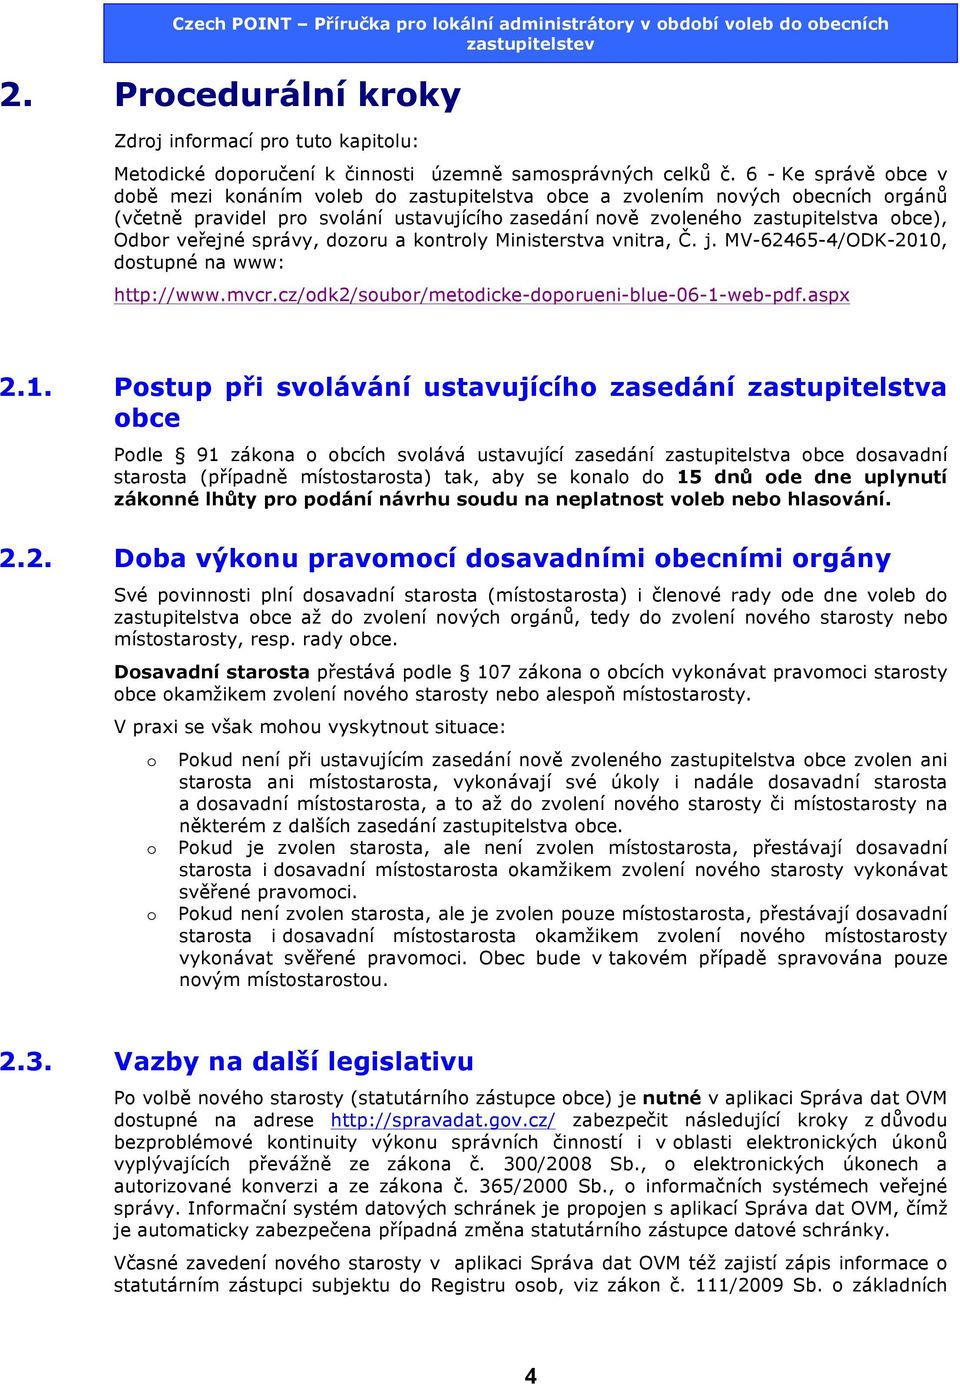 veřejné správy, dozoru a kontroly Ministerstva vnitra, Č. j. MV-62465-4/ODK-2010